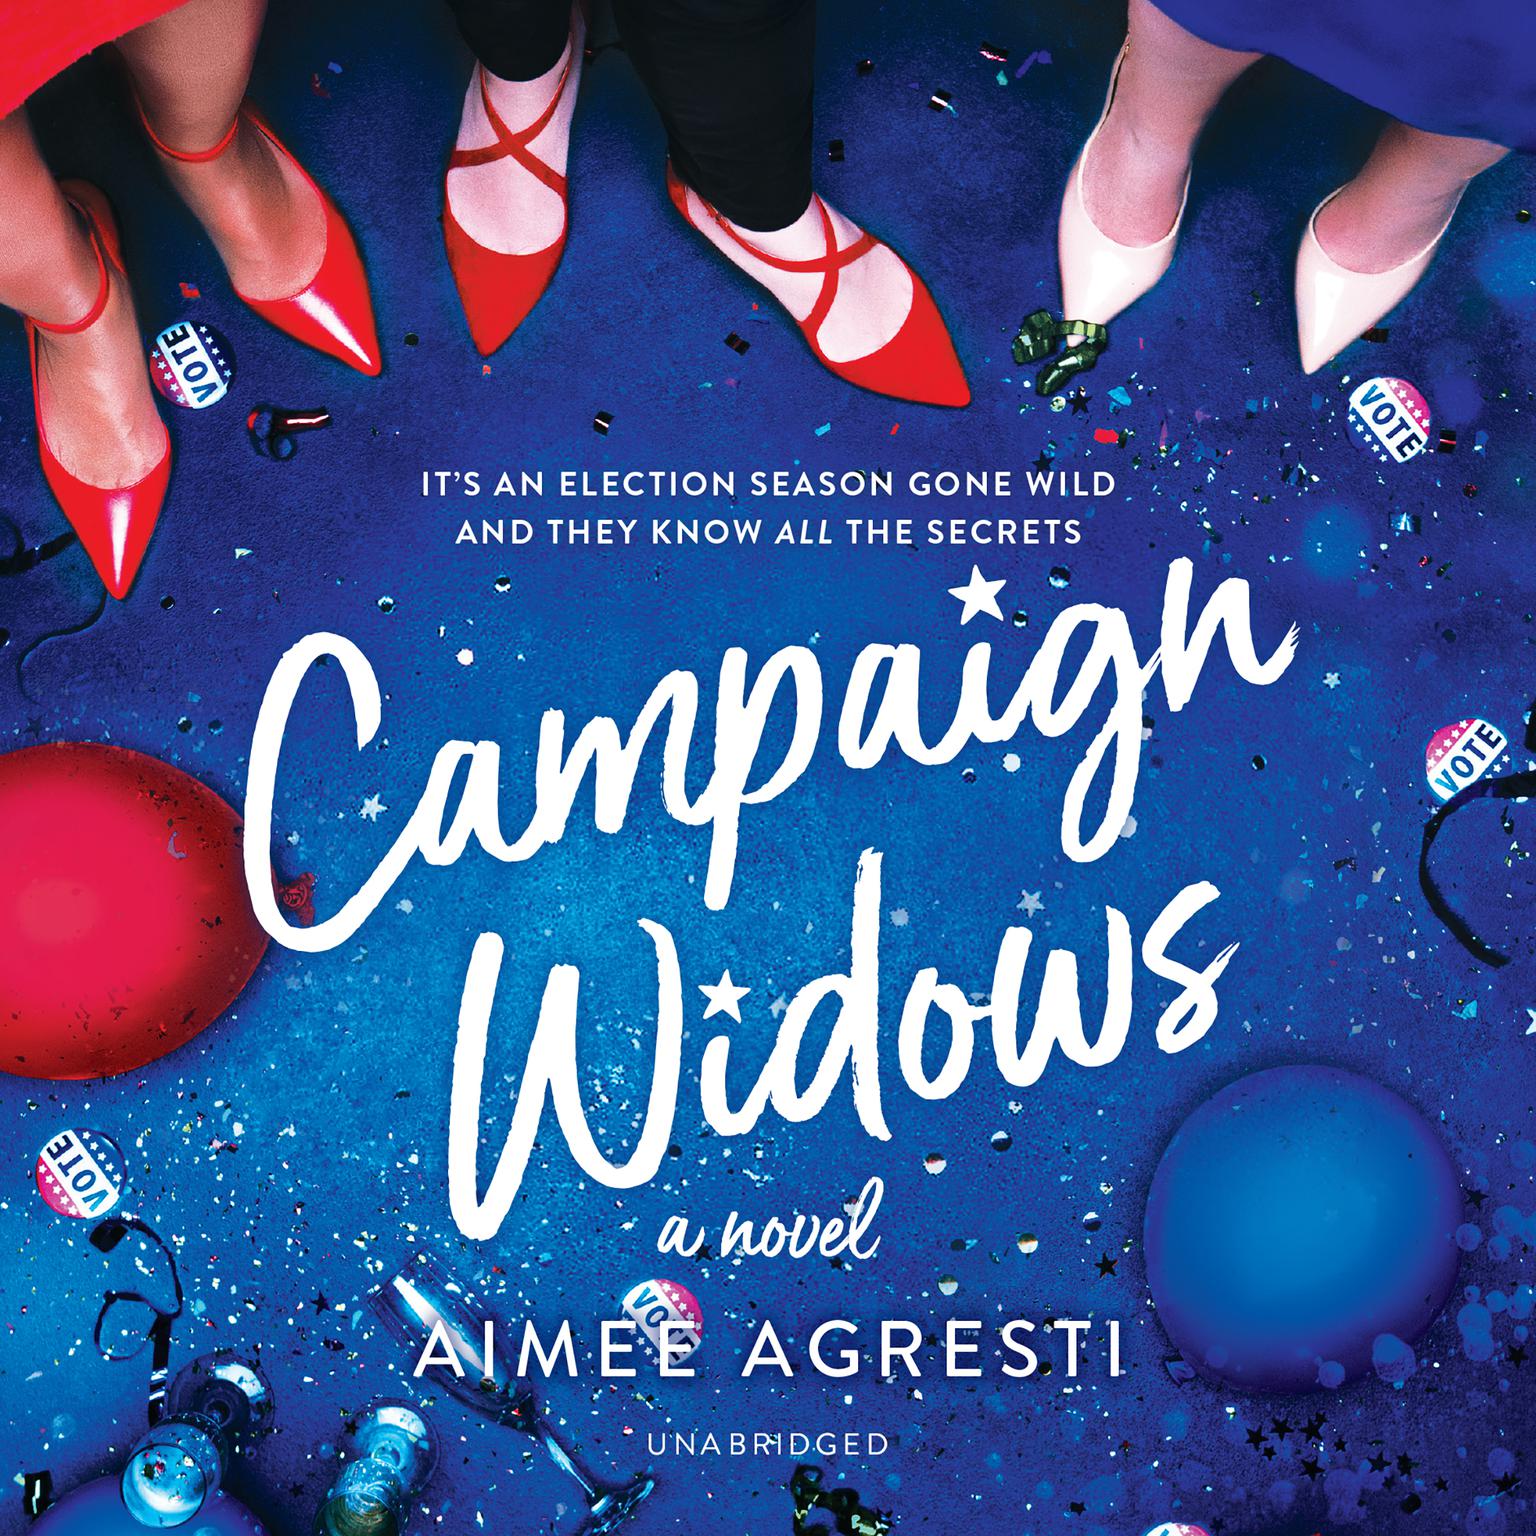 Campaign Widows: A Novel Audiobook, by Aimee Agresti